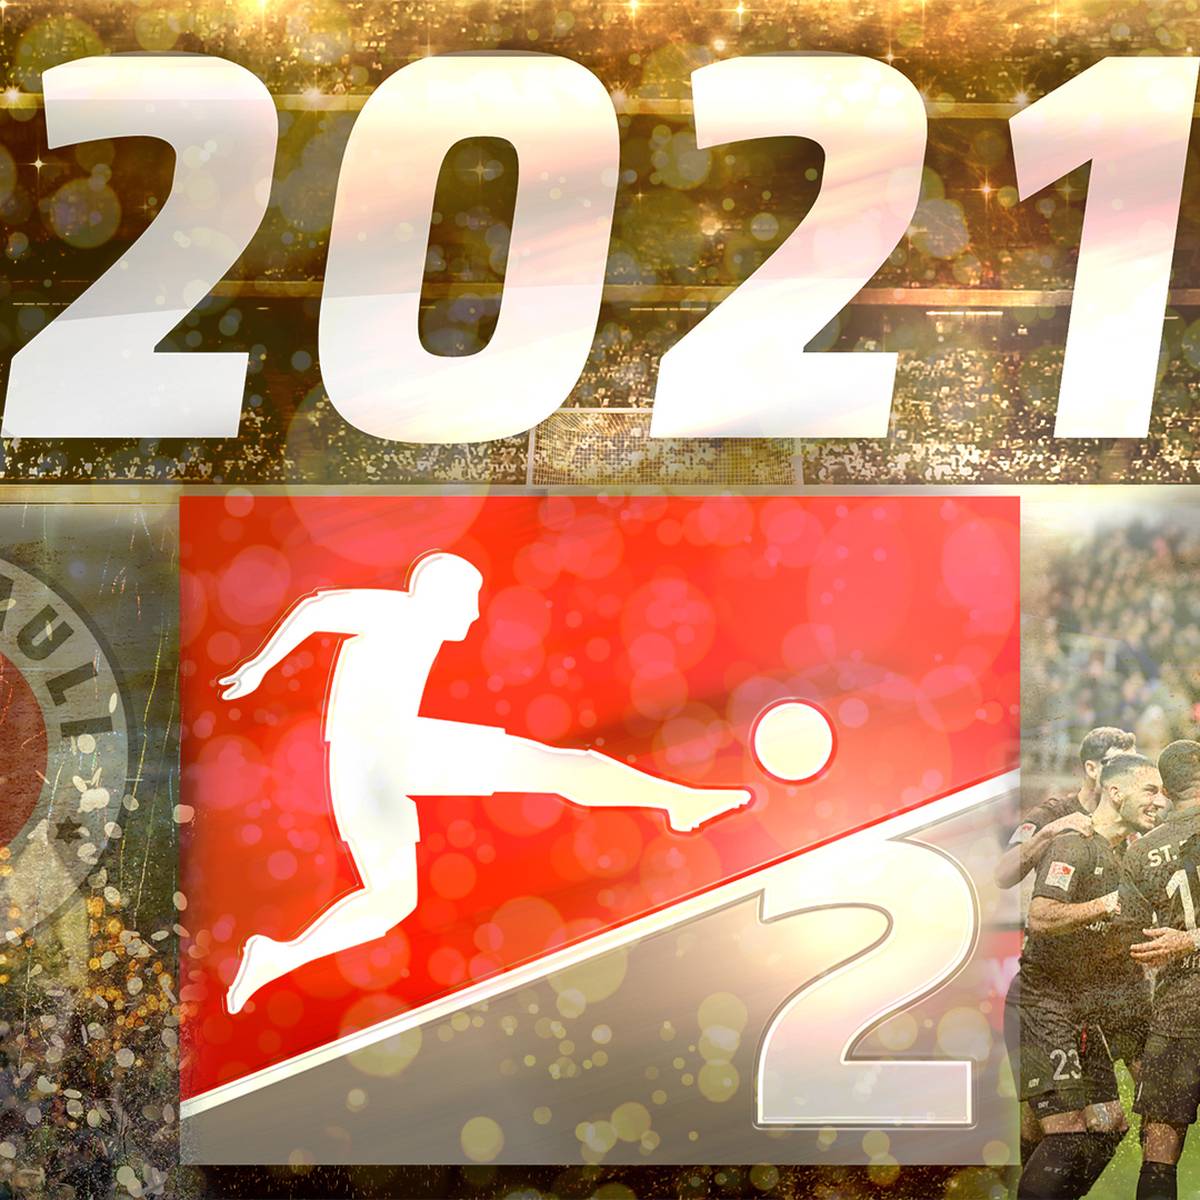 Vom Abstiegskampf zum Spitzenreiter! Jahresrückblick des FC St. Pauli 2021